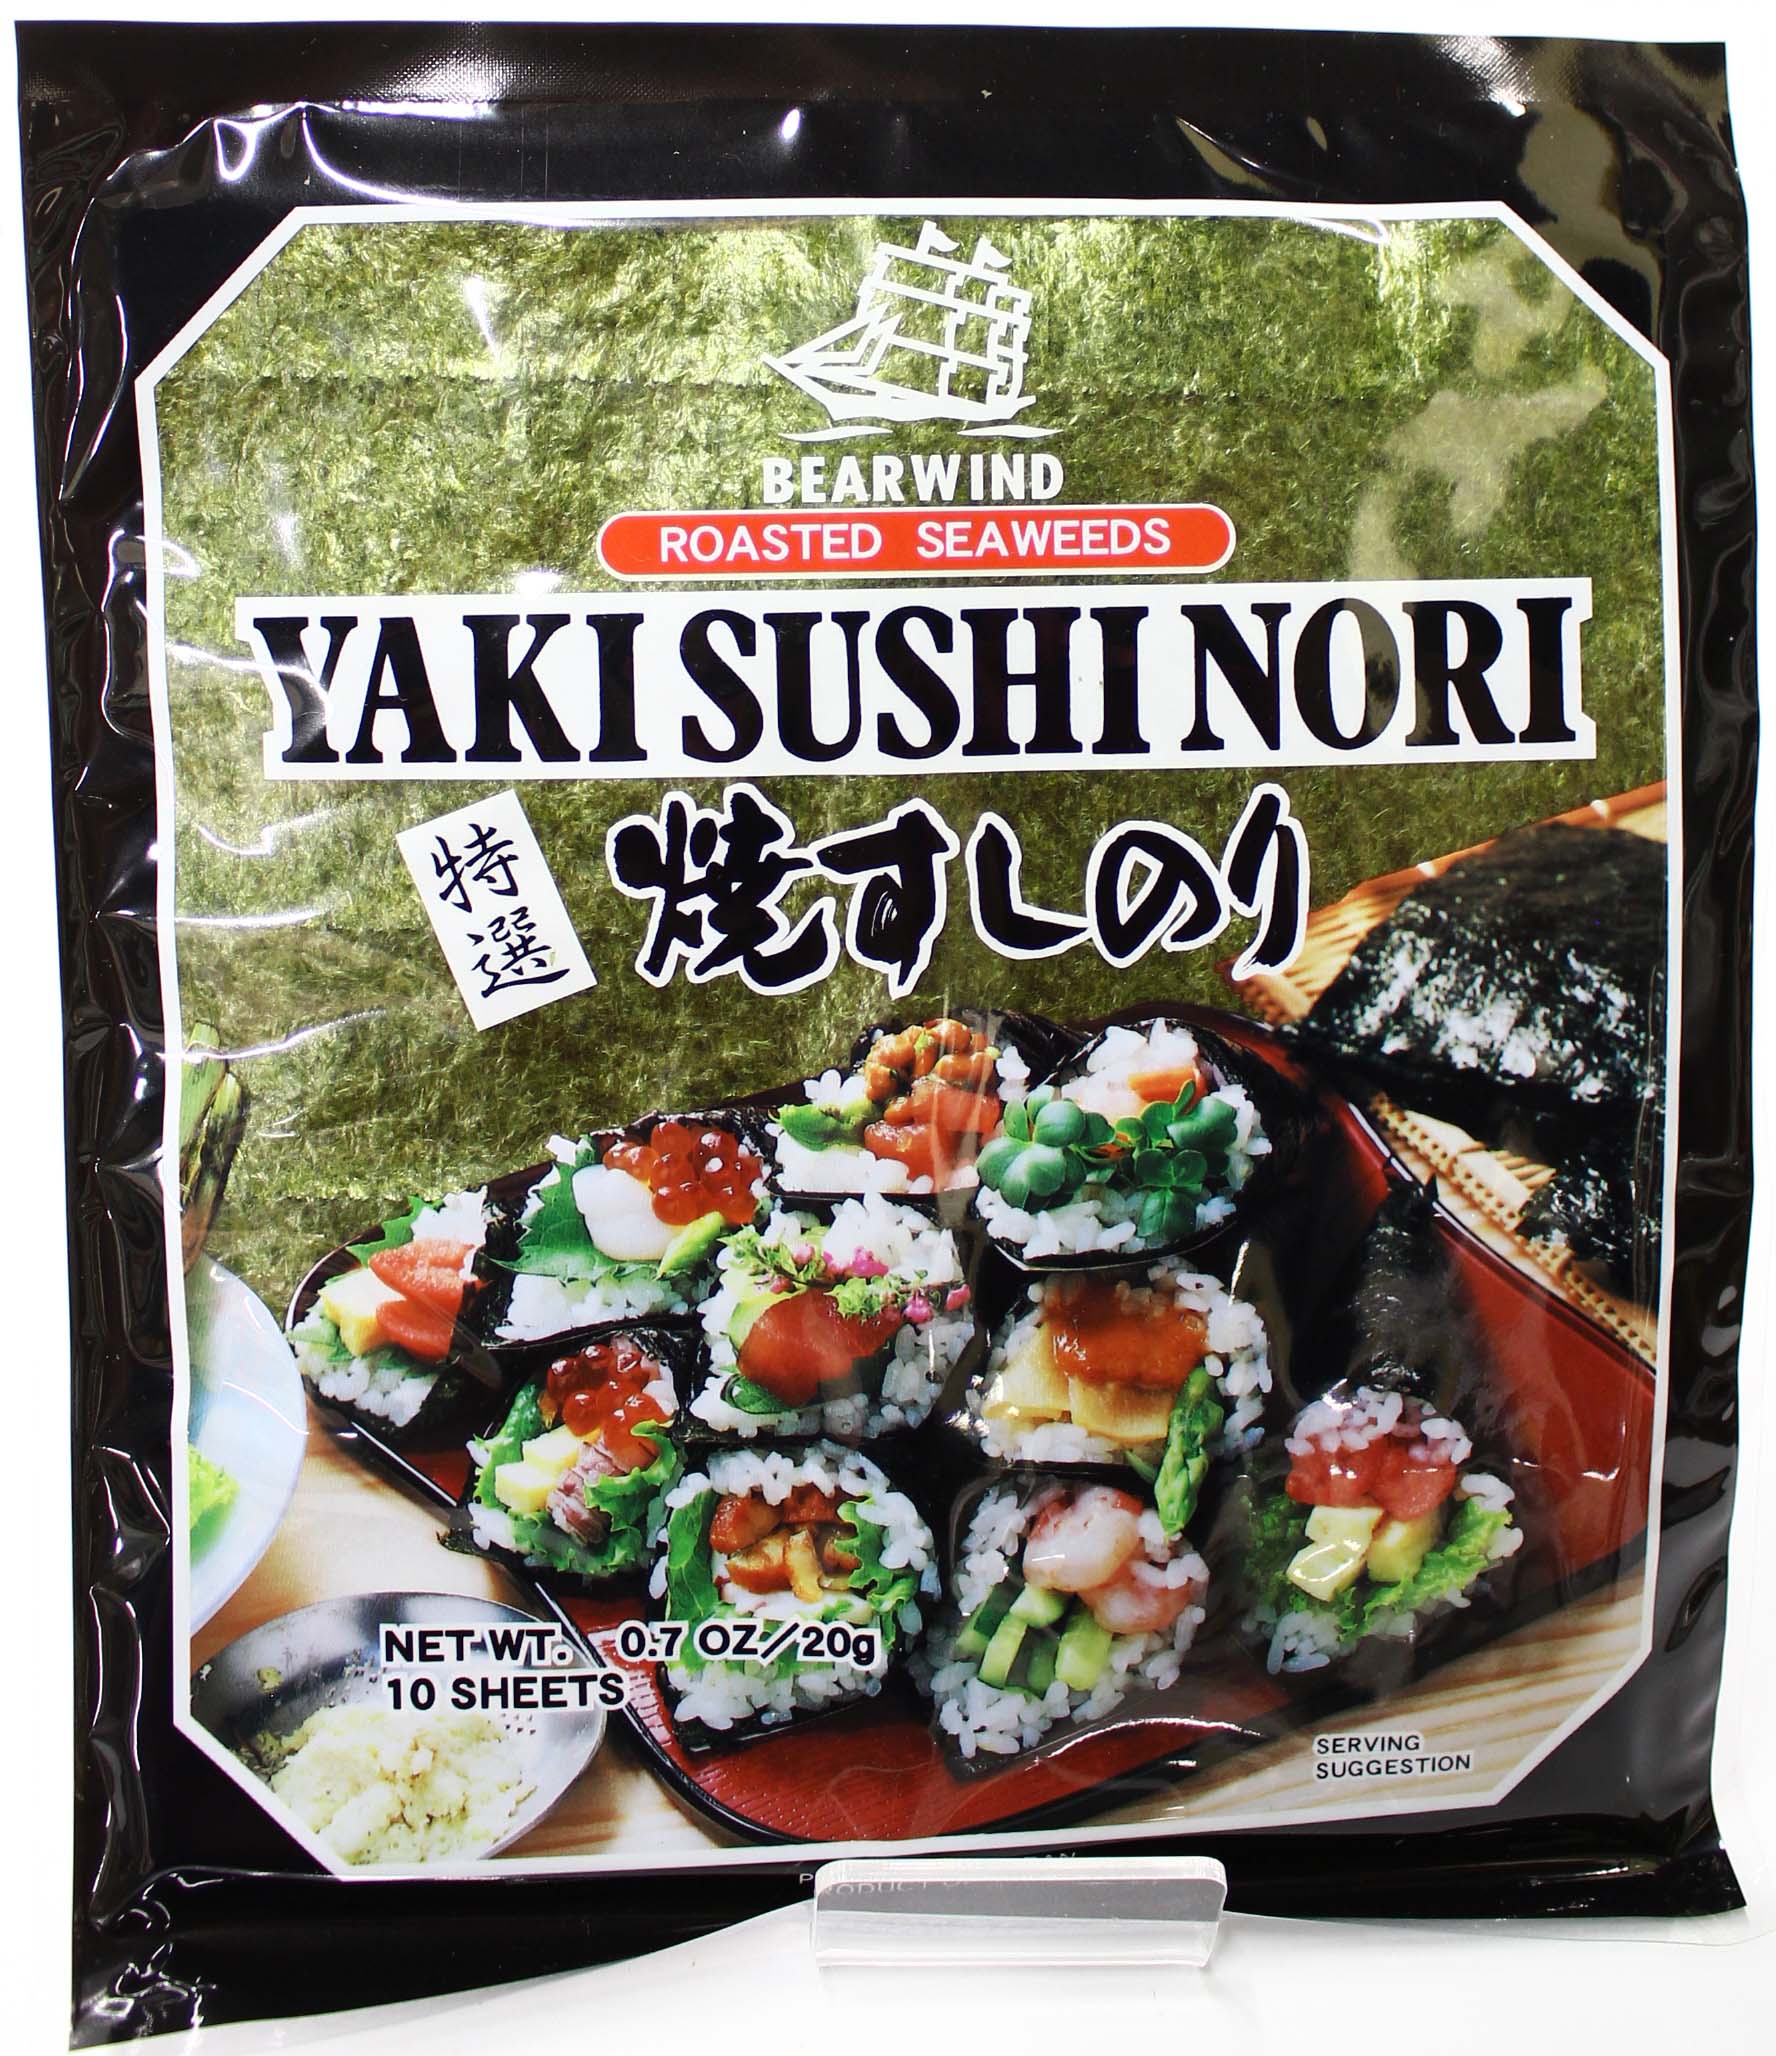 Algue Nori pour Temaki Sushi - 10 g